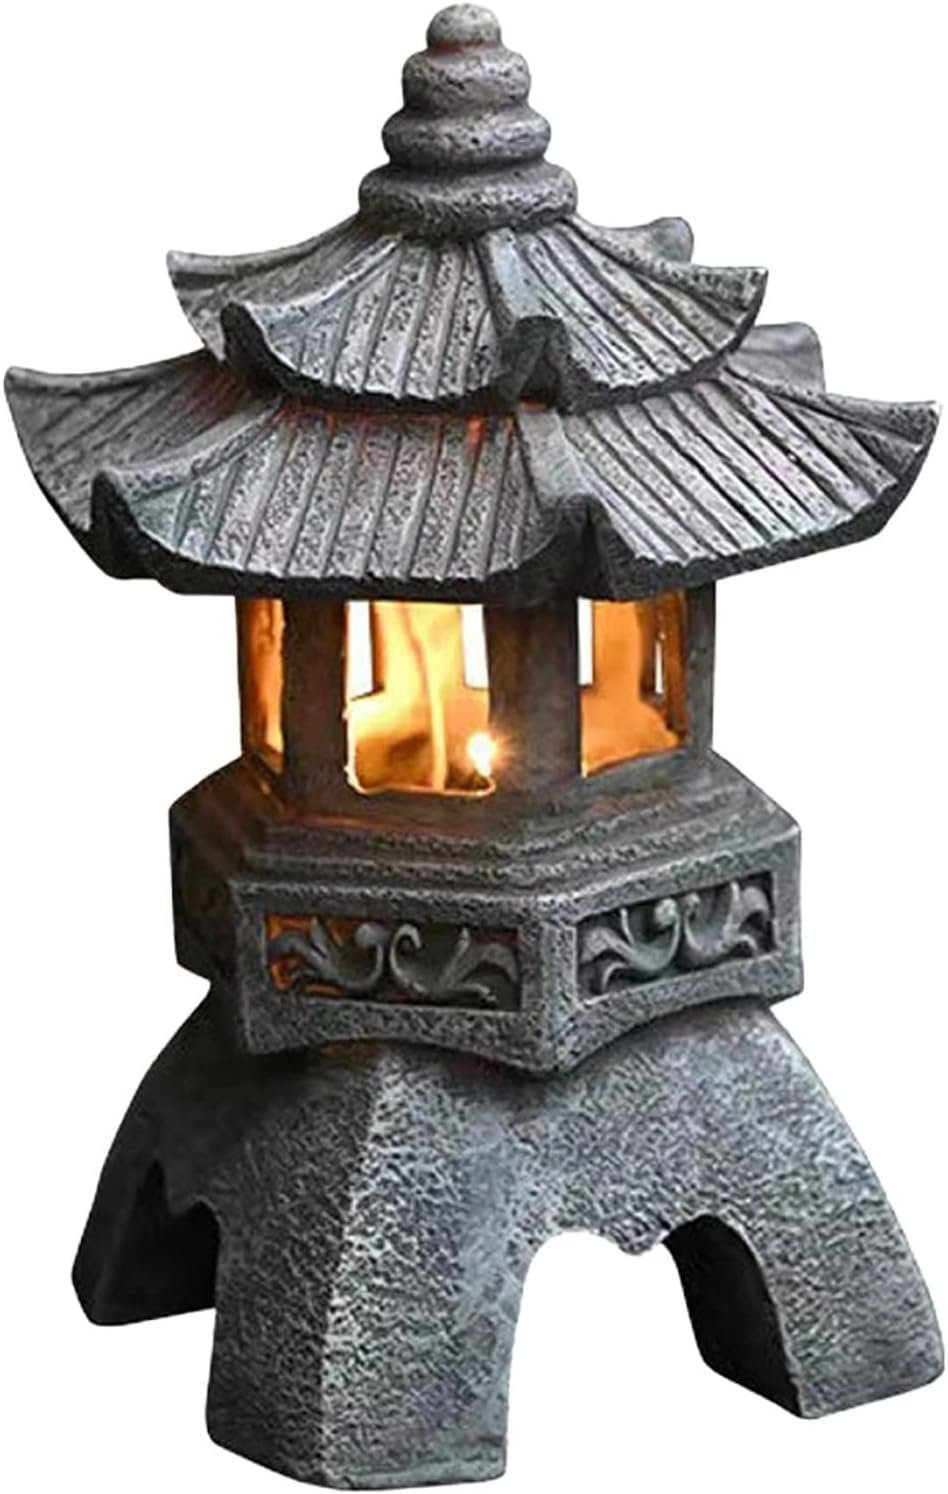 Scharf Solar-pagoden-laterne,Japanische UV-beständig rost-,wetter- und Stil, DOPWii Gartenleuchte